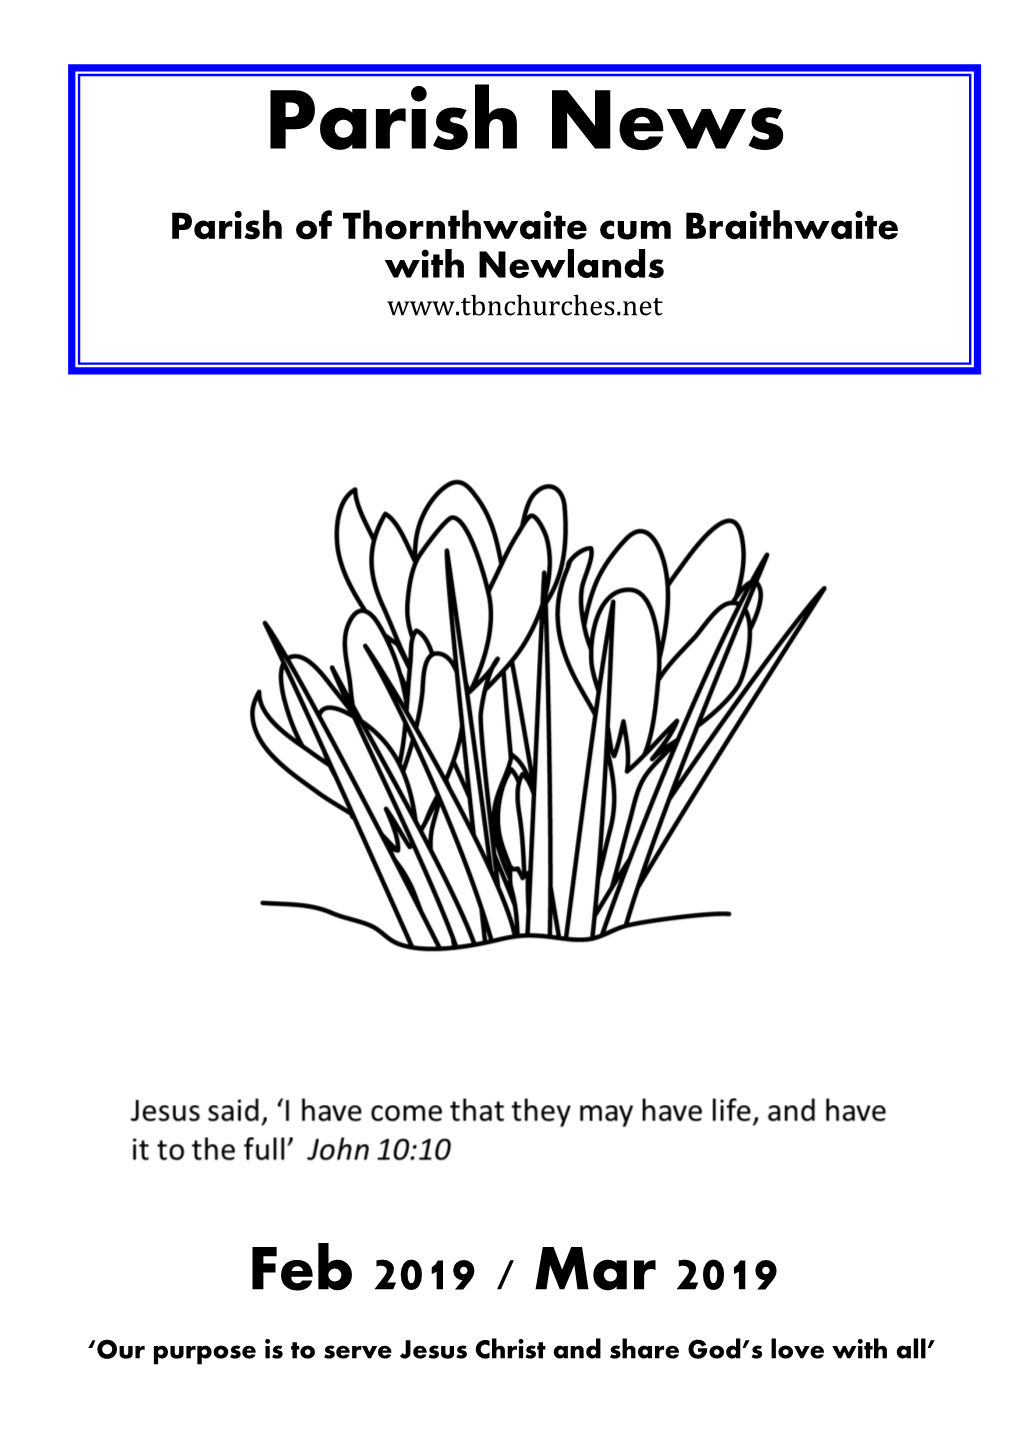 Parish News Parish of Thornthwaite Cum Braithwaite with Newlands